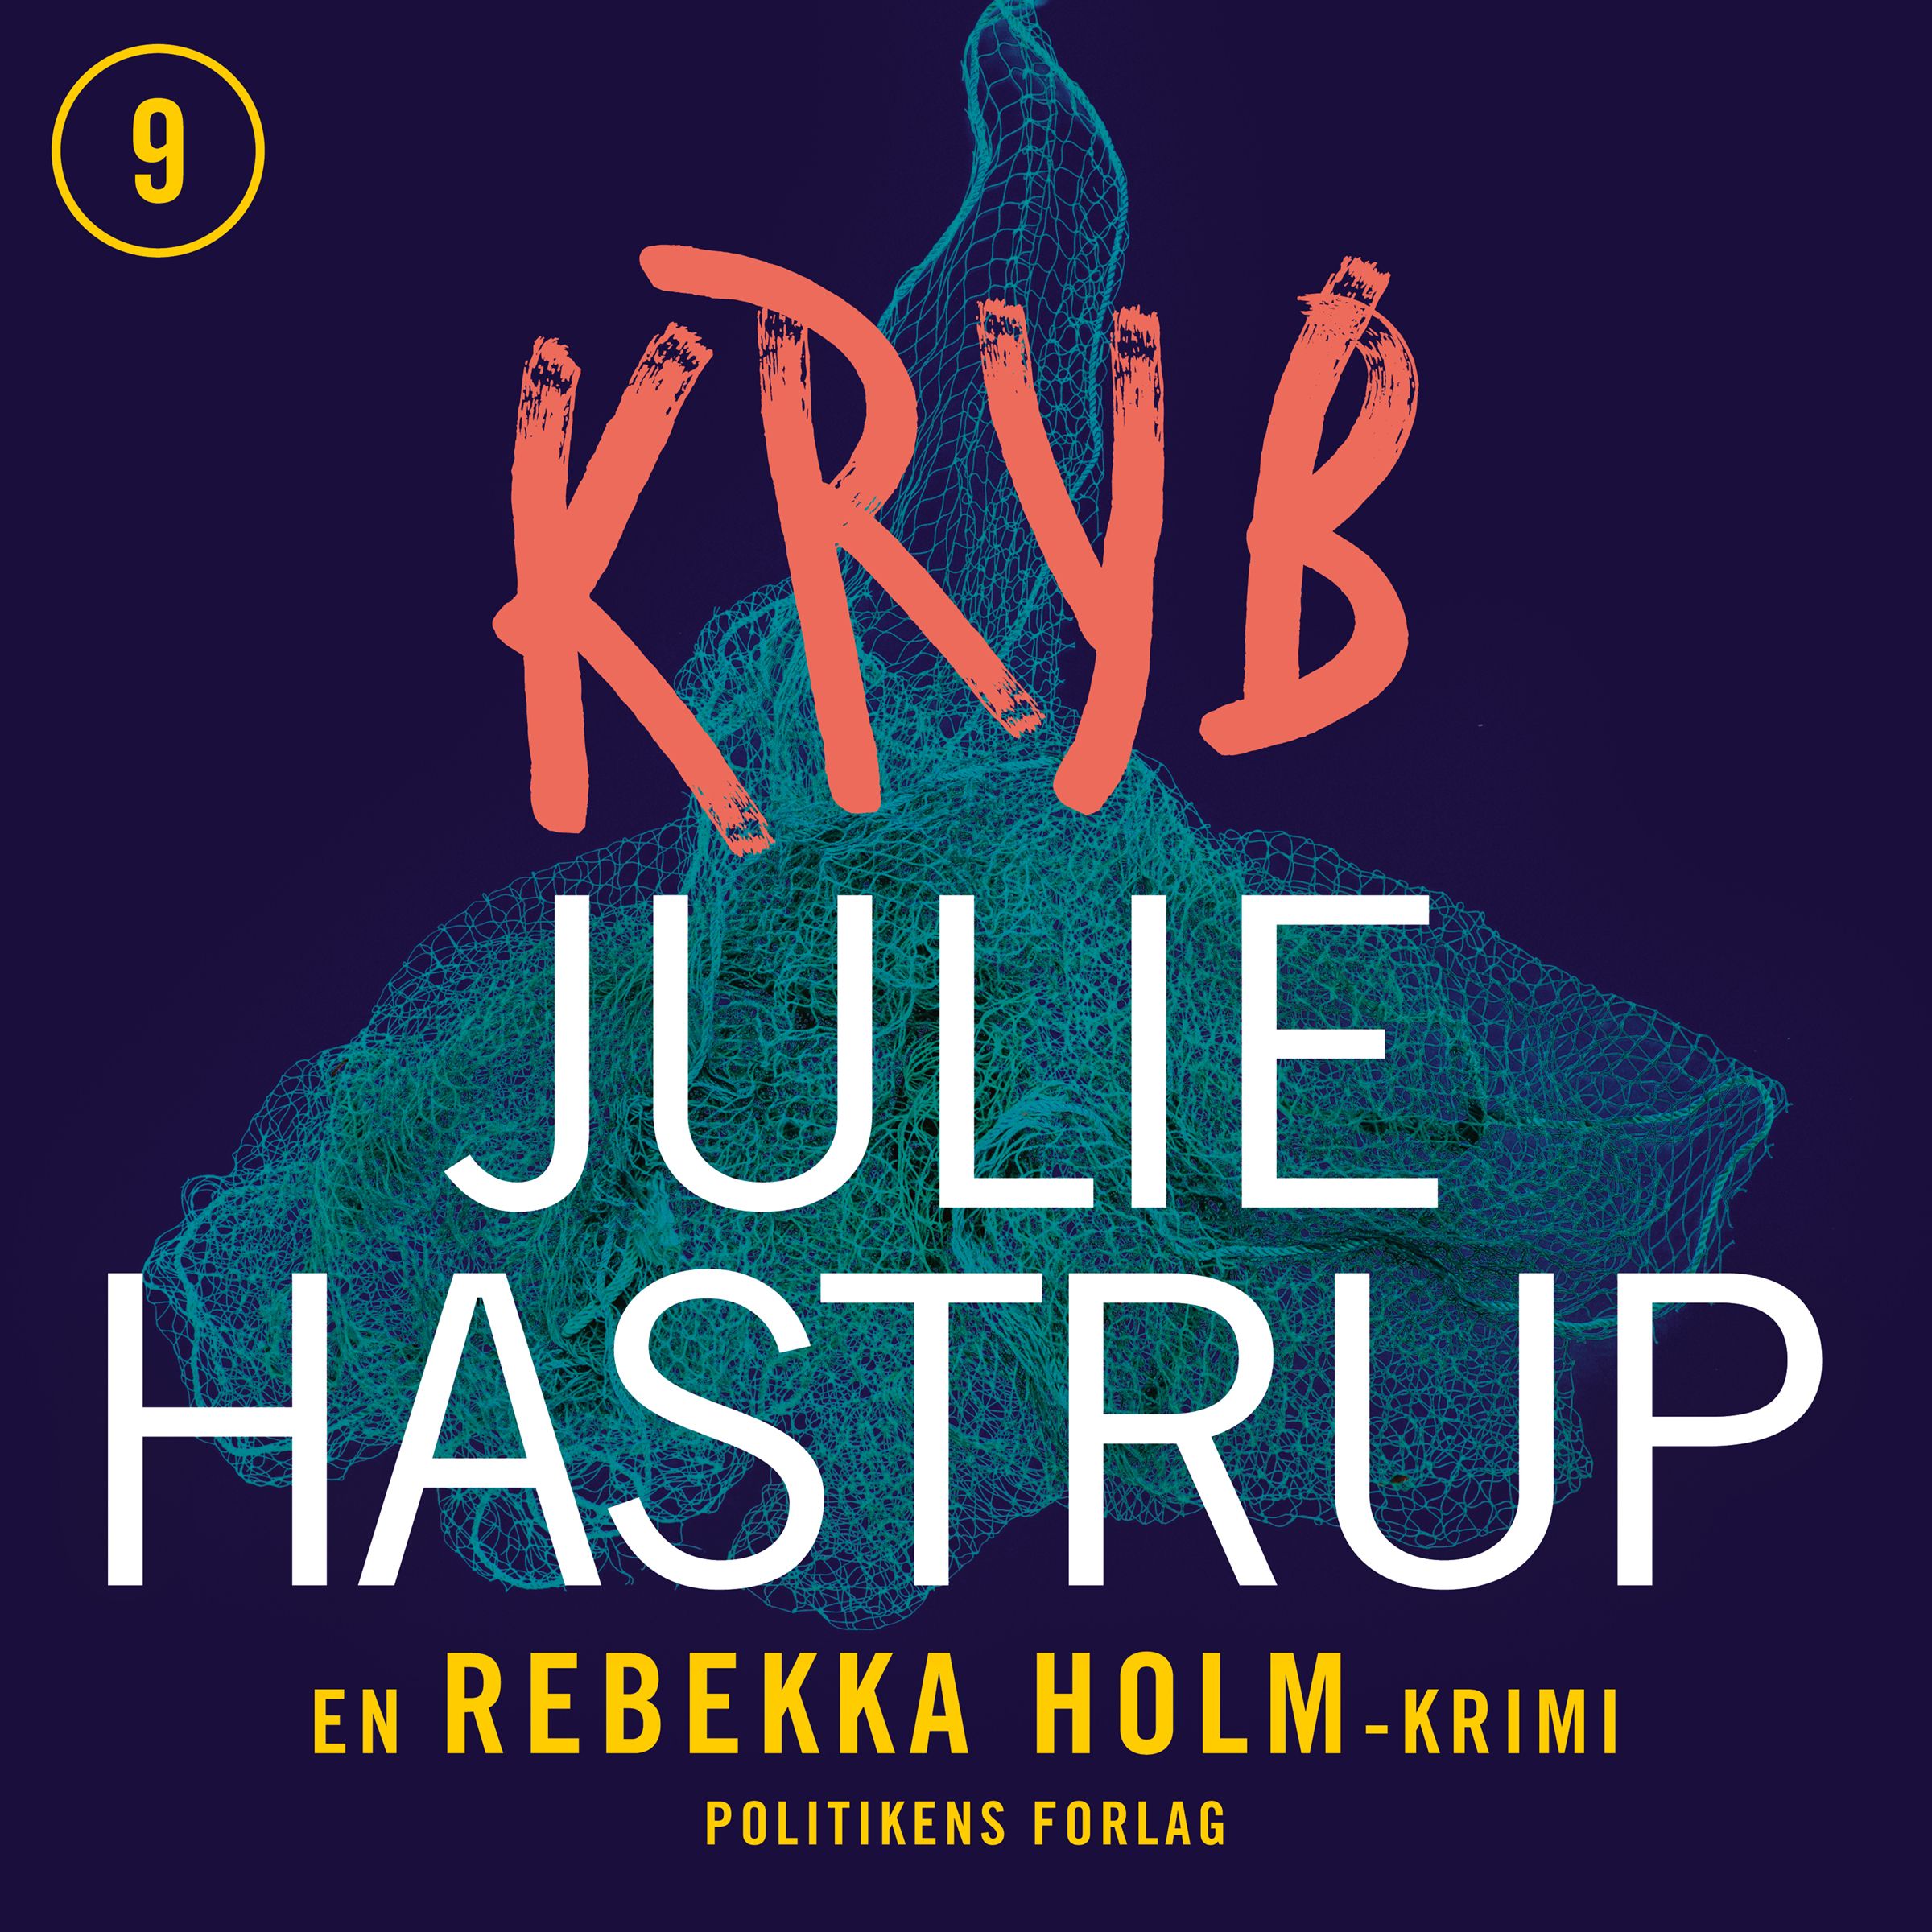 Kryb, lydbog af Julie Hastrup